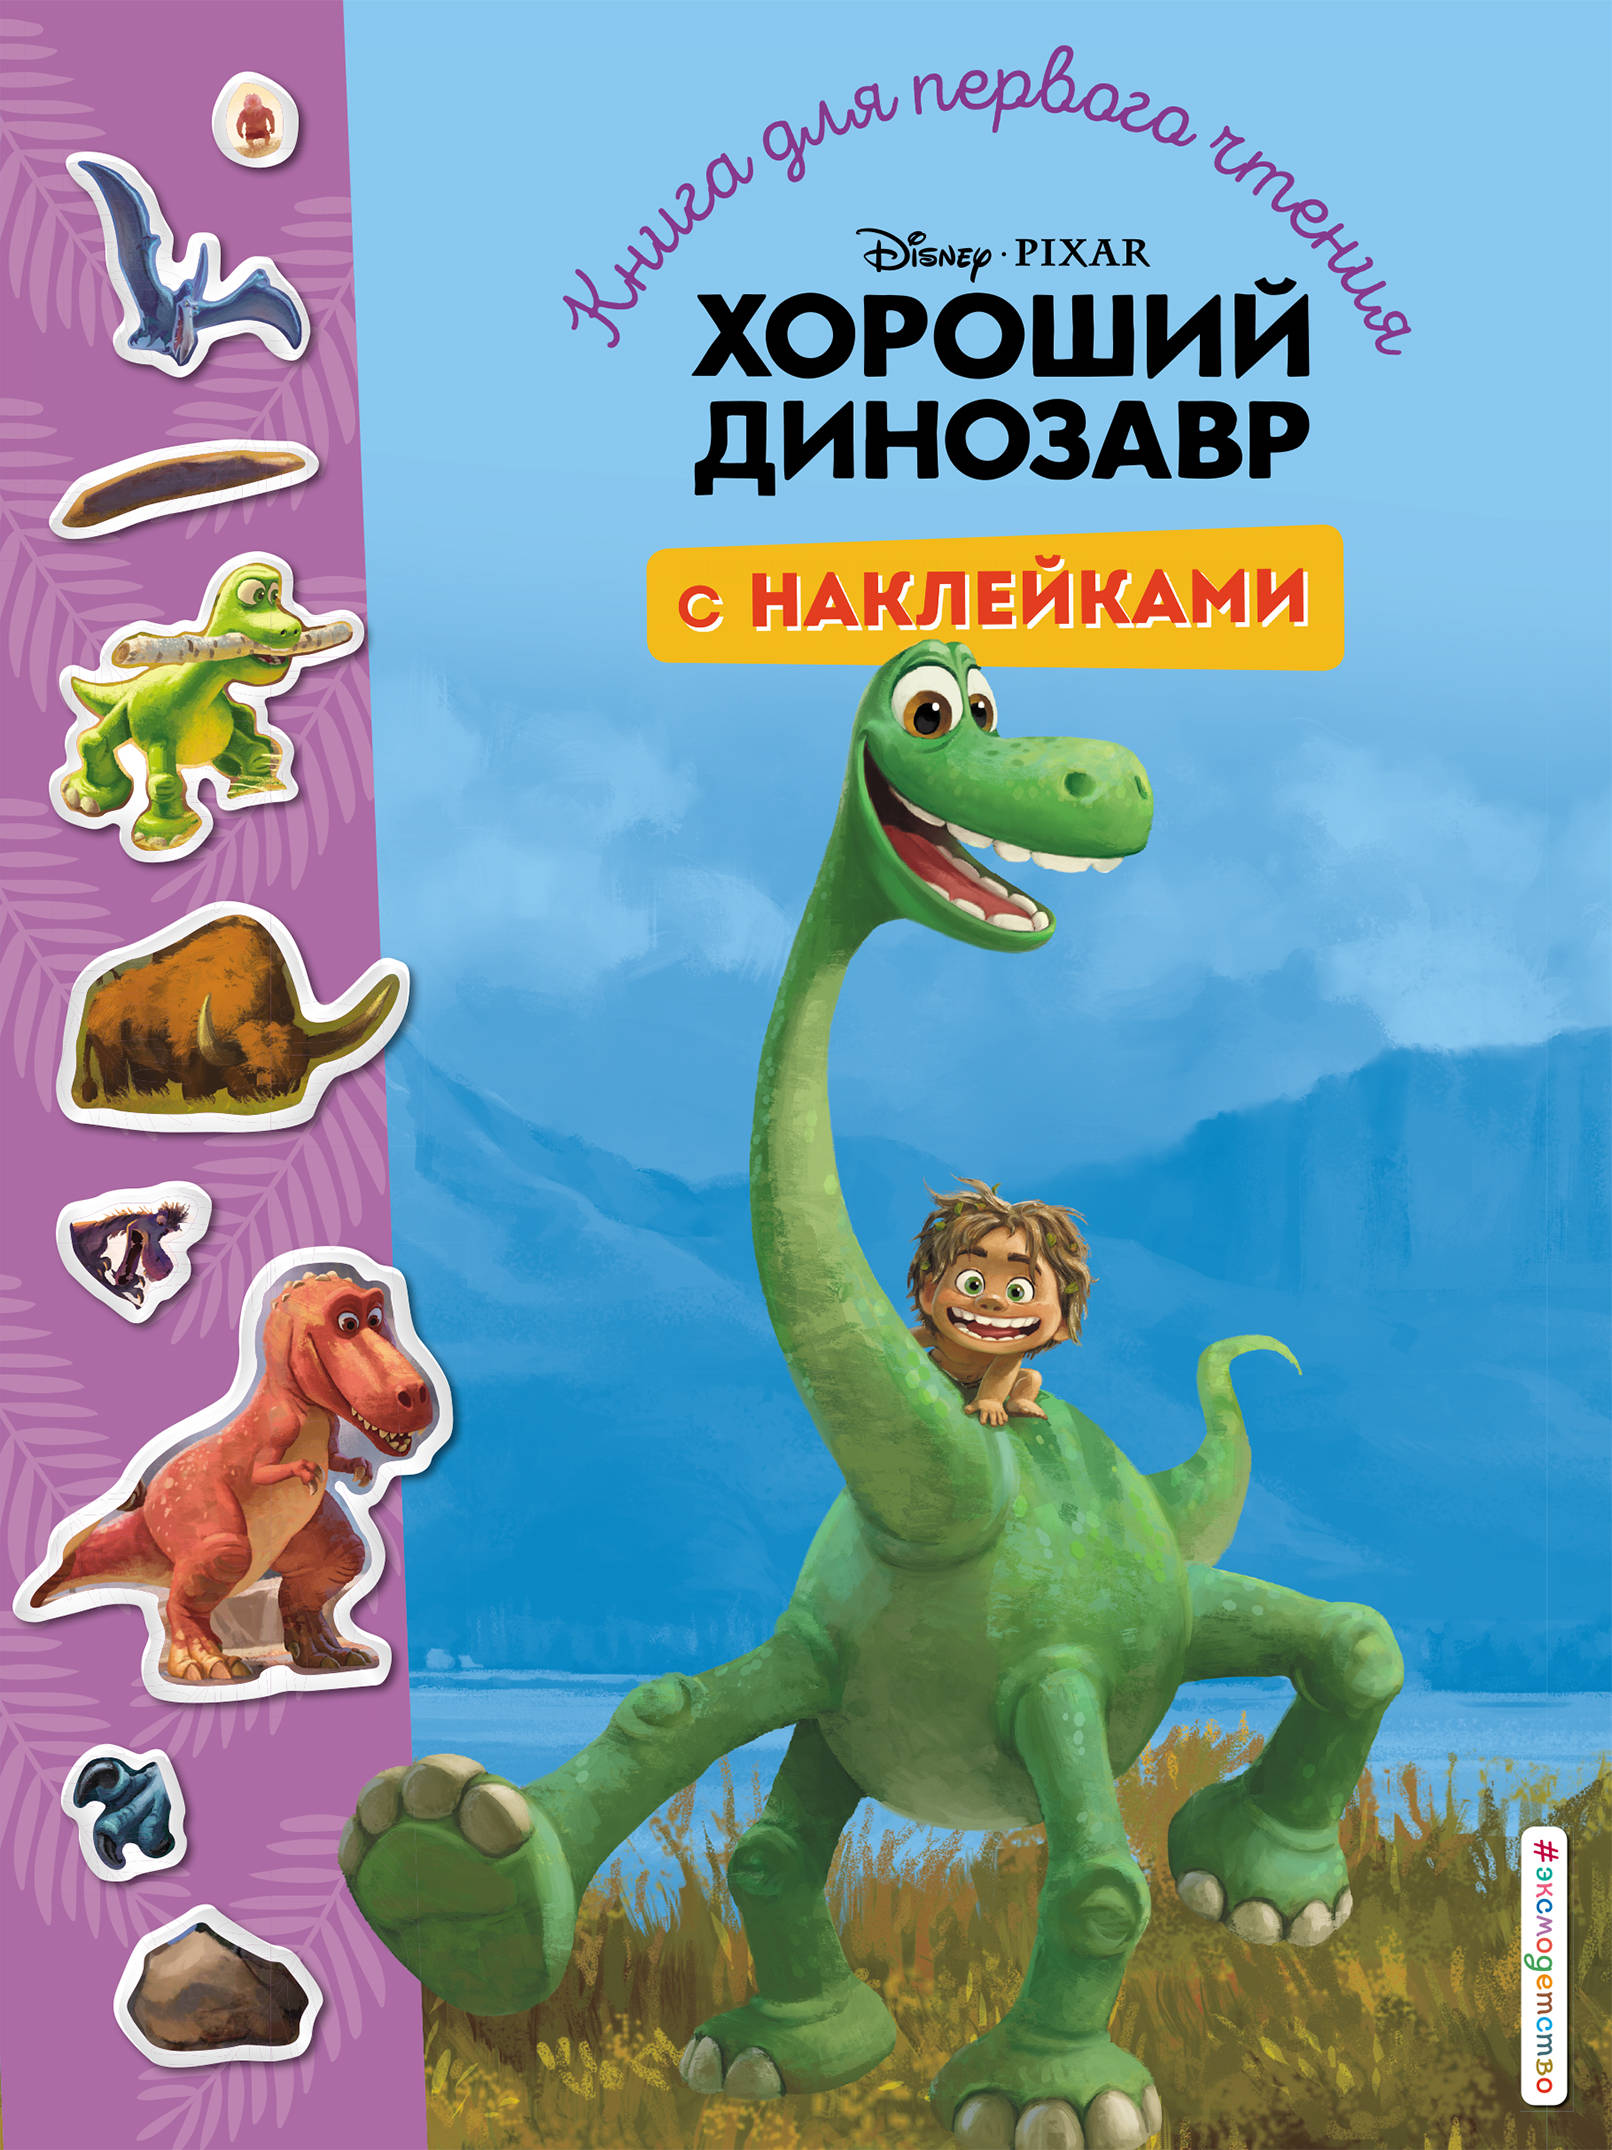 Хороший динозавр. Книга для первого чтения с наклейками 